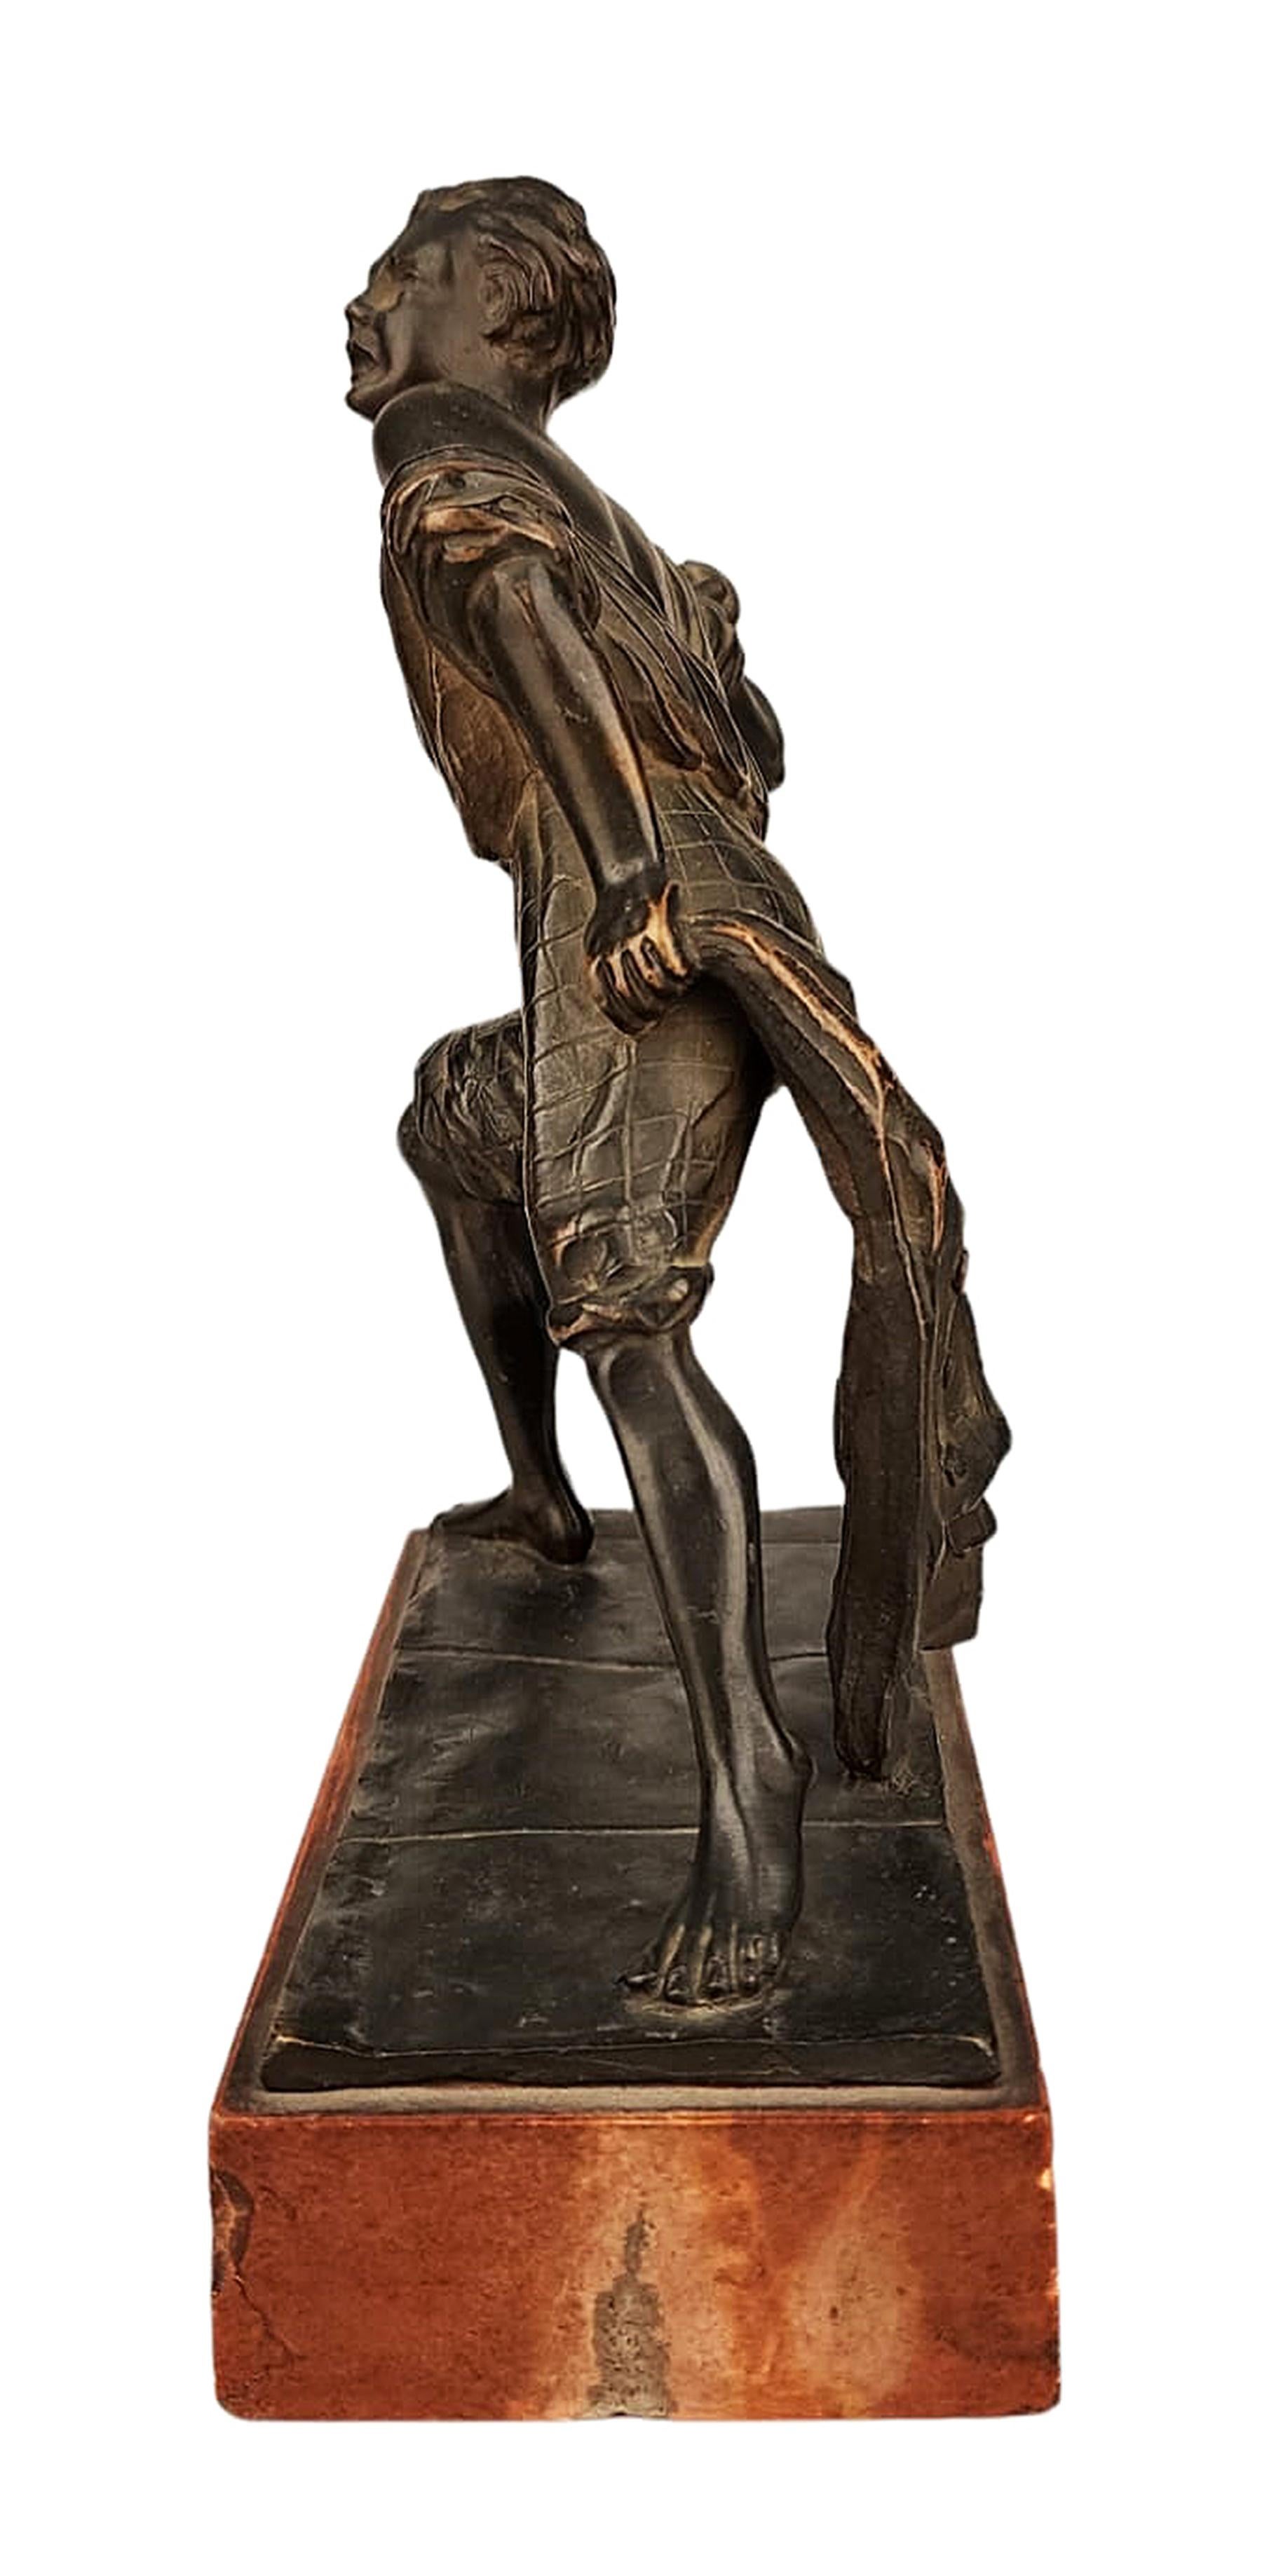 Art Deco Early 20th C. Italian Bronze Sculpture Depicting Giambattista Perasso 'Balilla' For Sale